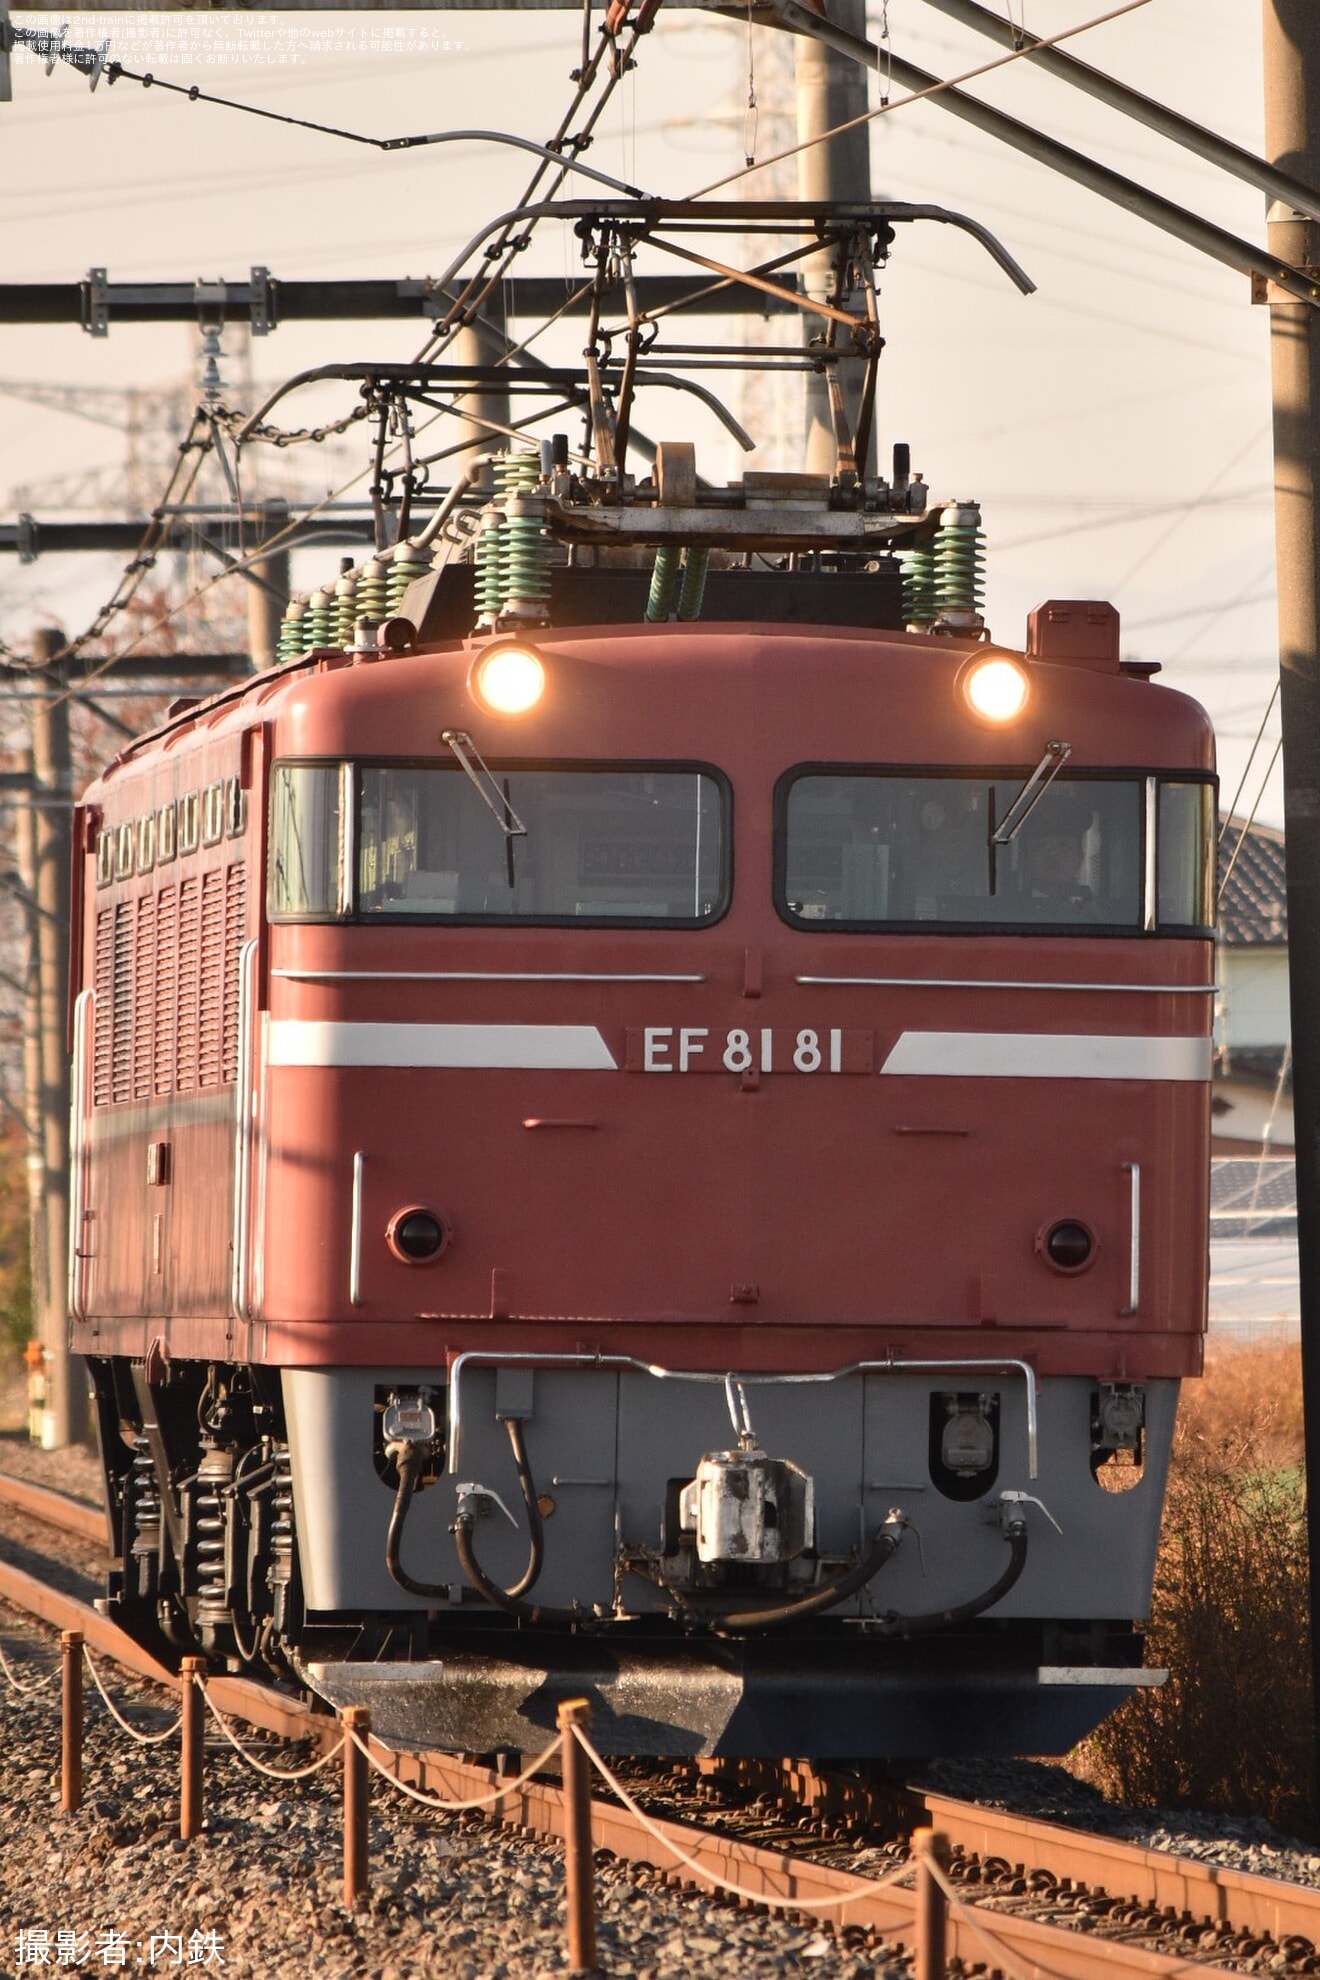 【JR東】EF81-81 返却回送の拡大写真